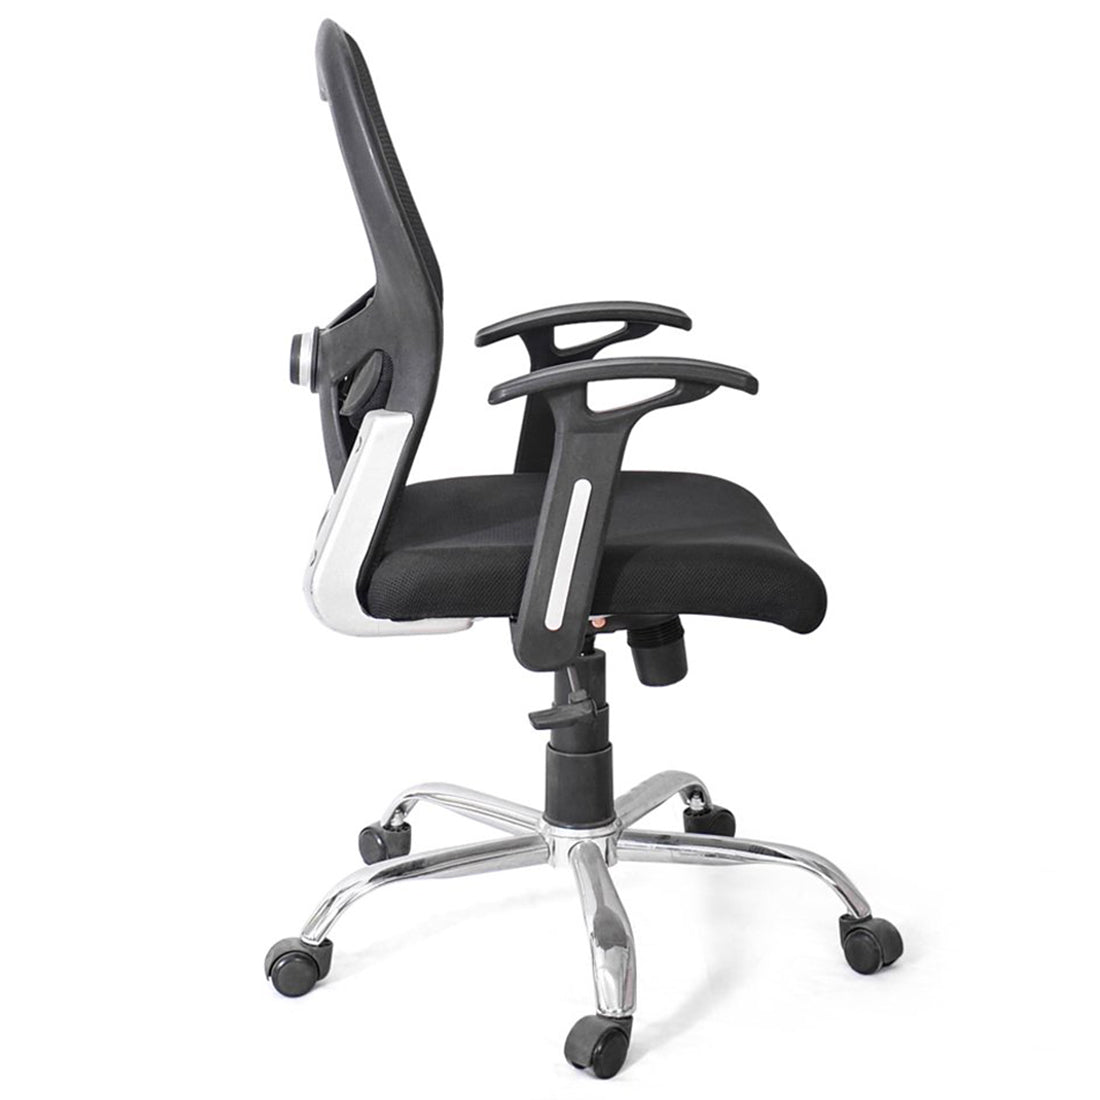 Detec™ Net Modern Design Revolving Chair - Black